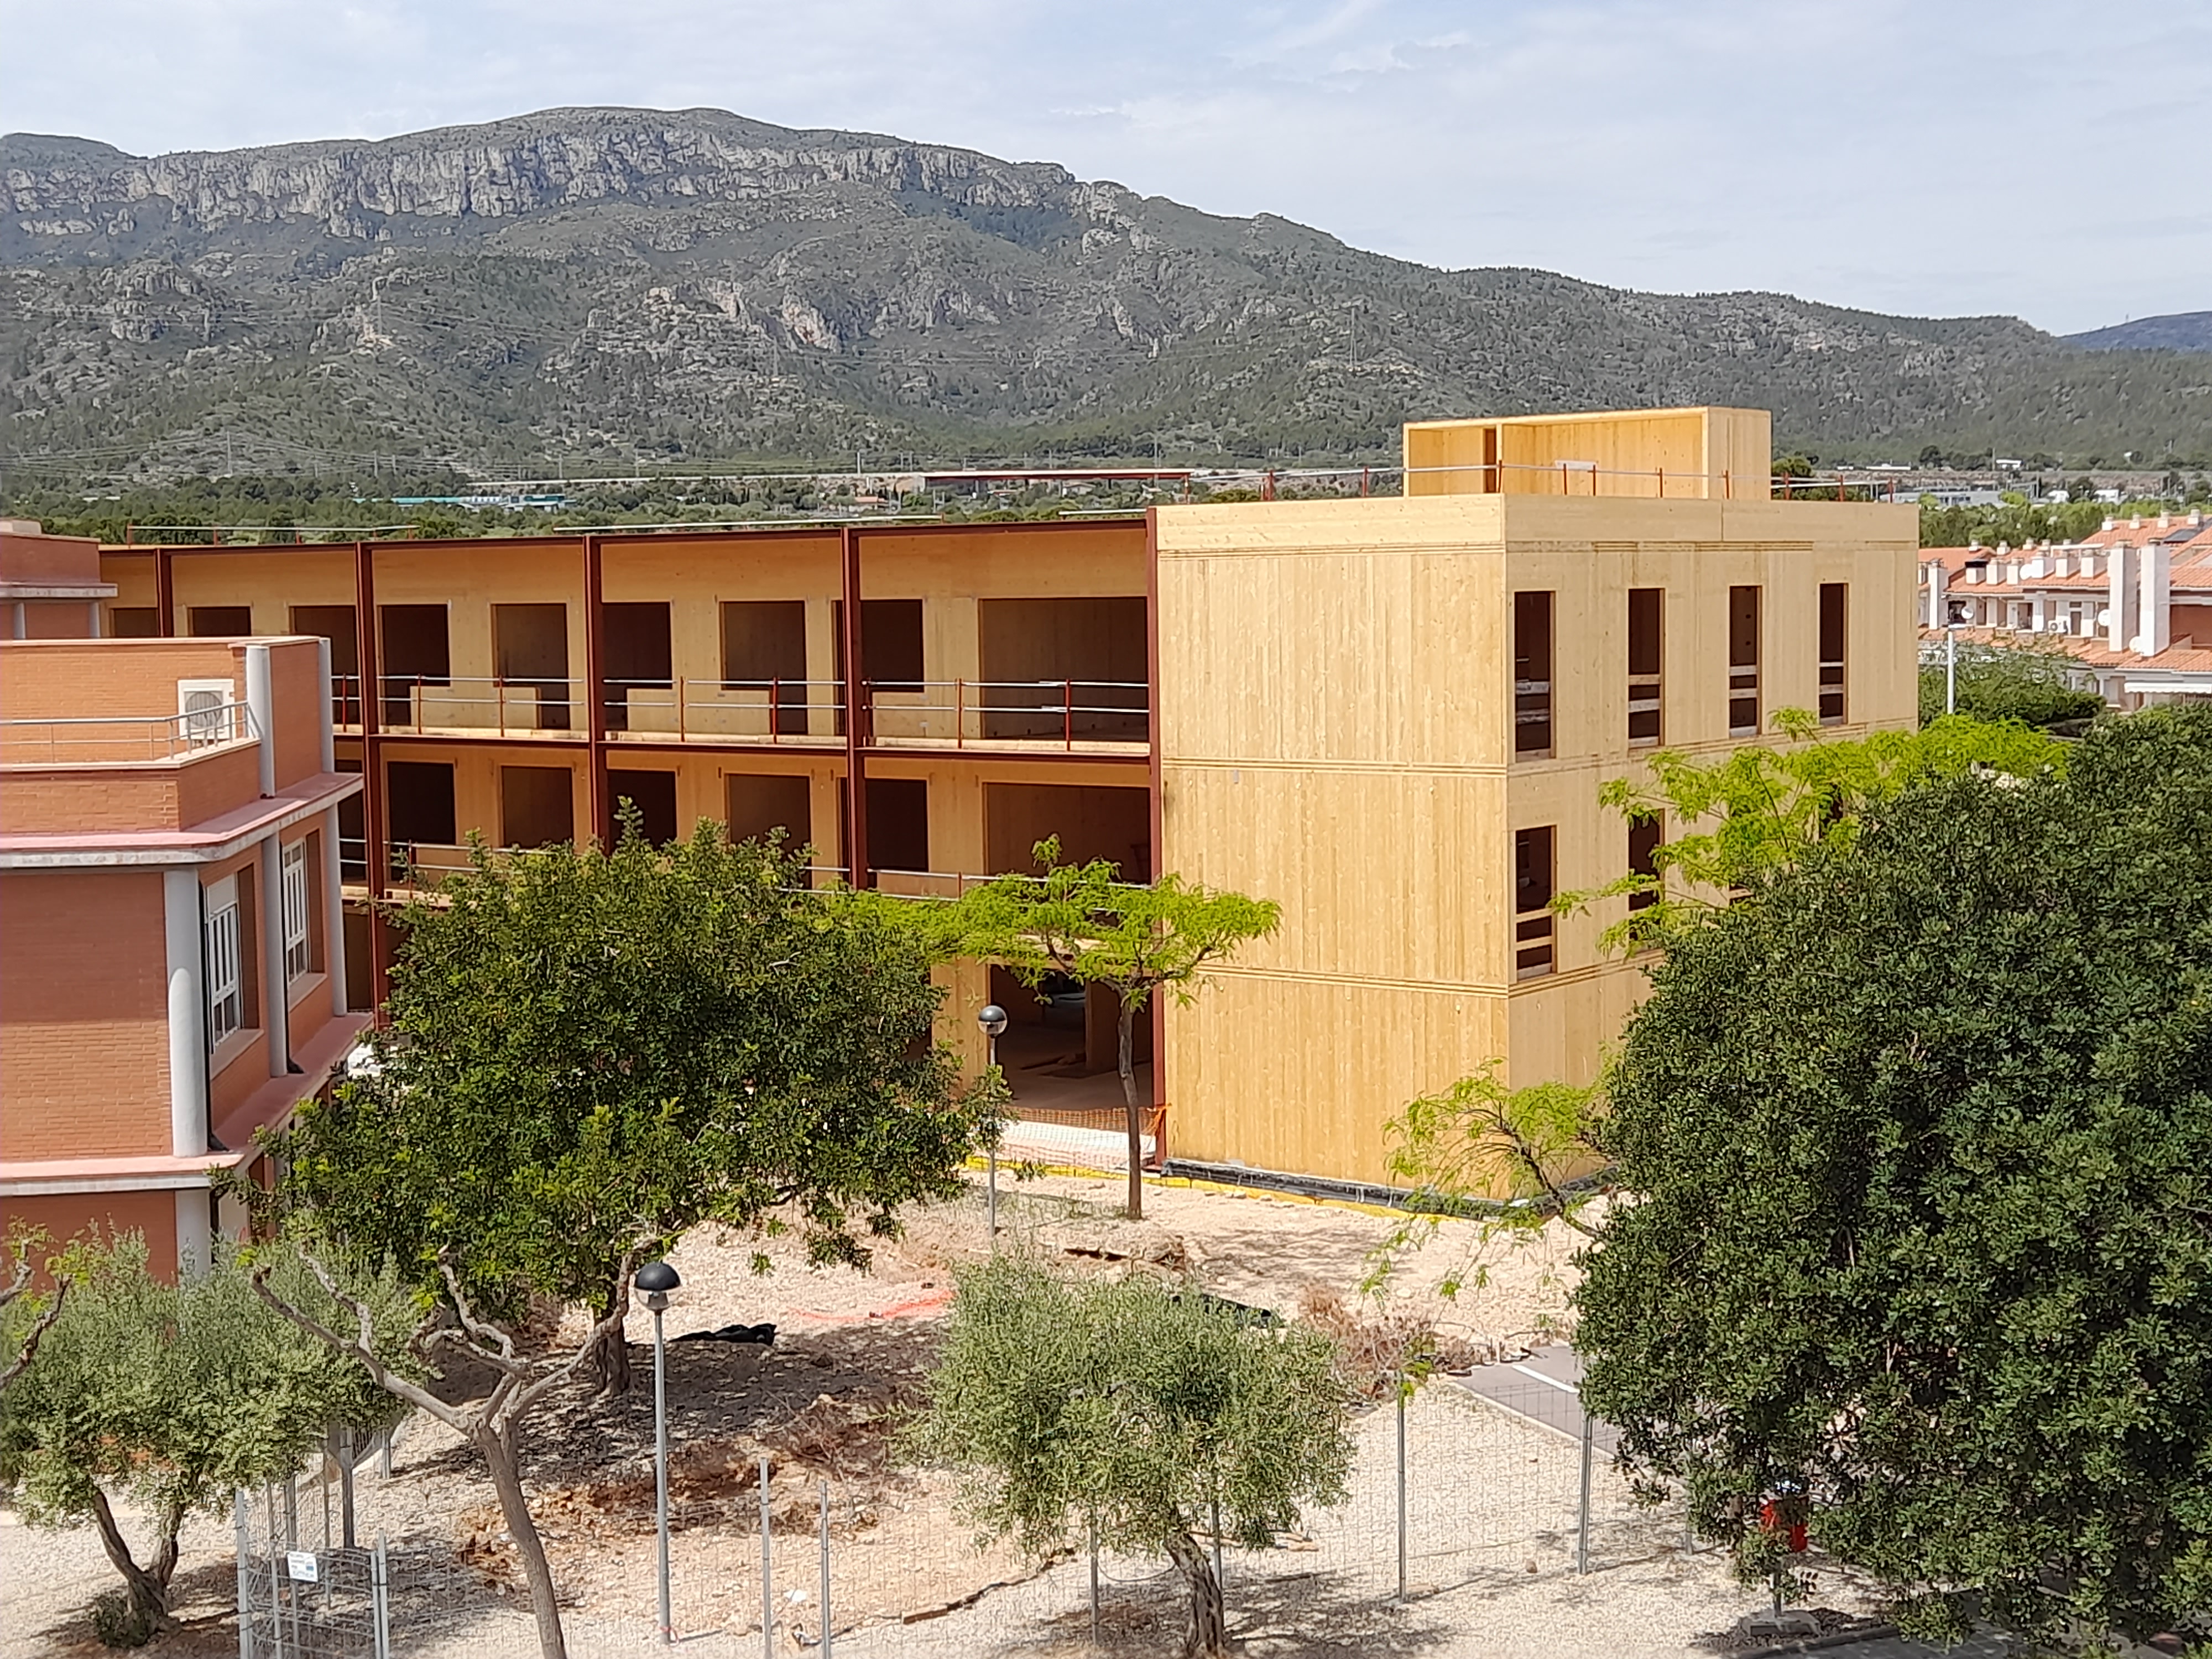 L’Ajuntament de Vandellòs i l’Hospitalet de l’Infant rebrà més de 740.000 € dels Next Generation per finançar la nova residència per a la gent gran